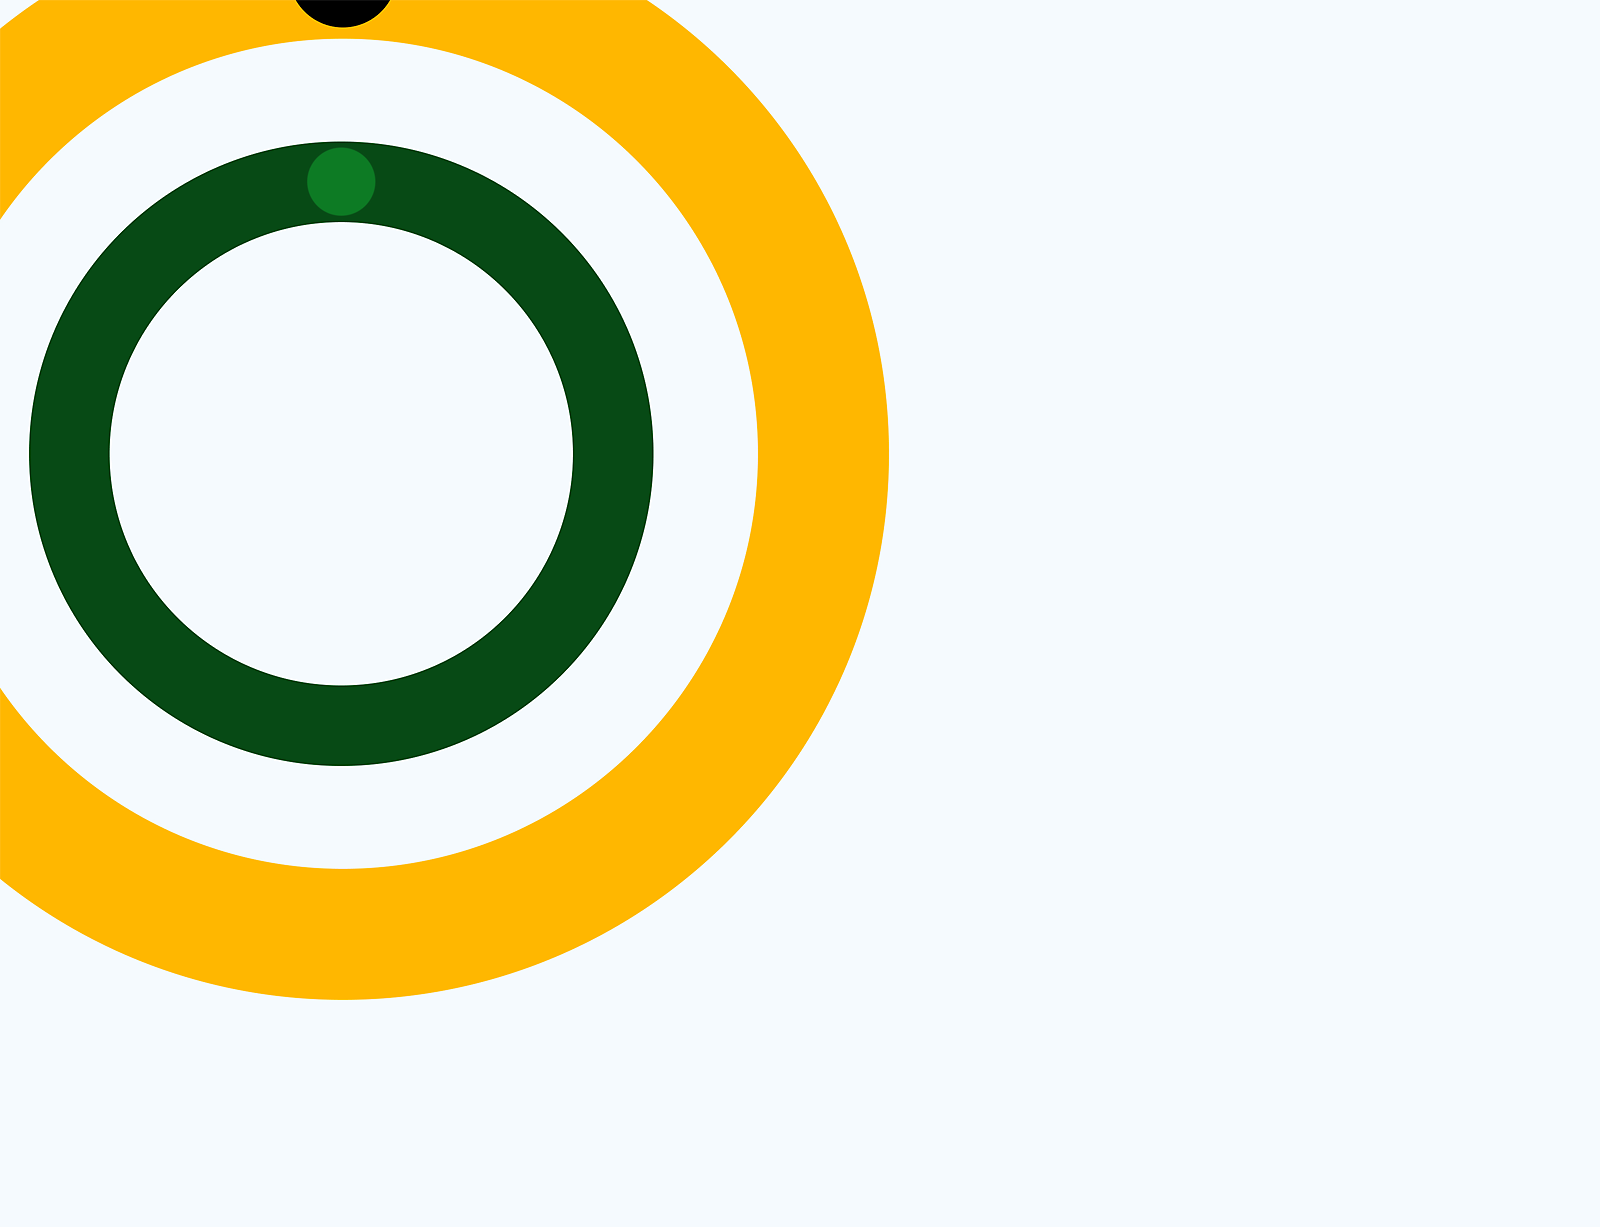 Grafica astratta di cerchi concentrici verdi, gialli e bianchi su sfondo grigio.